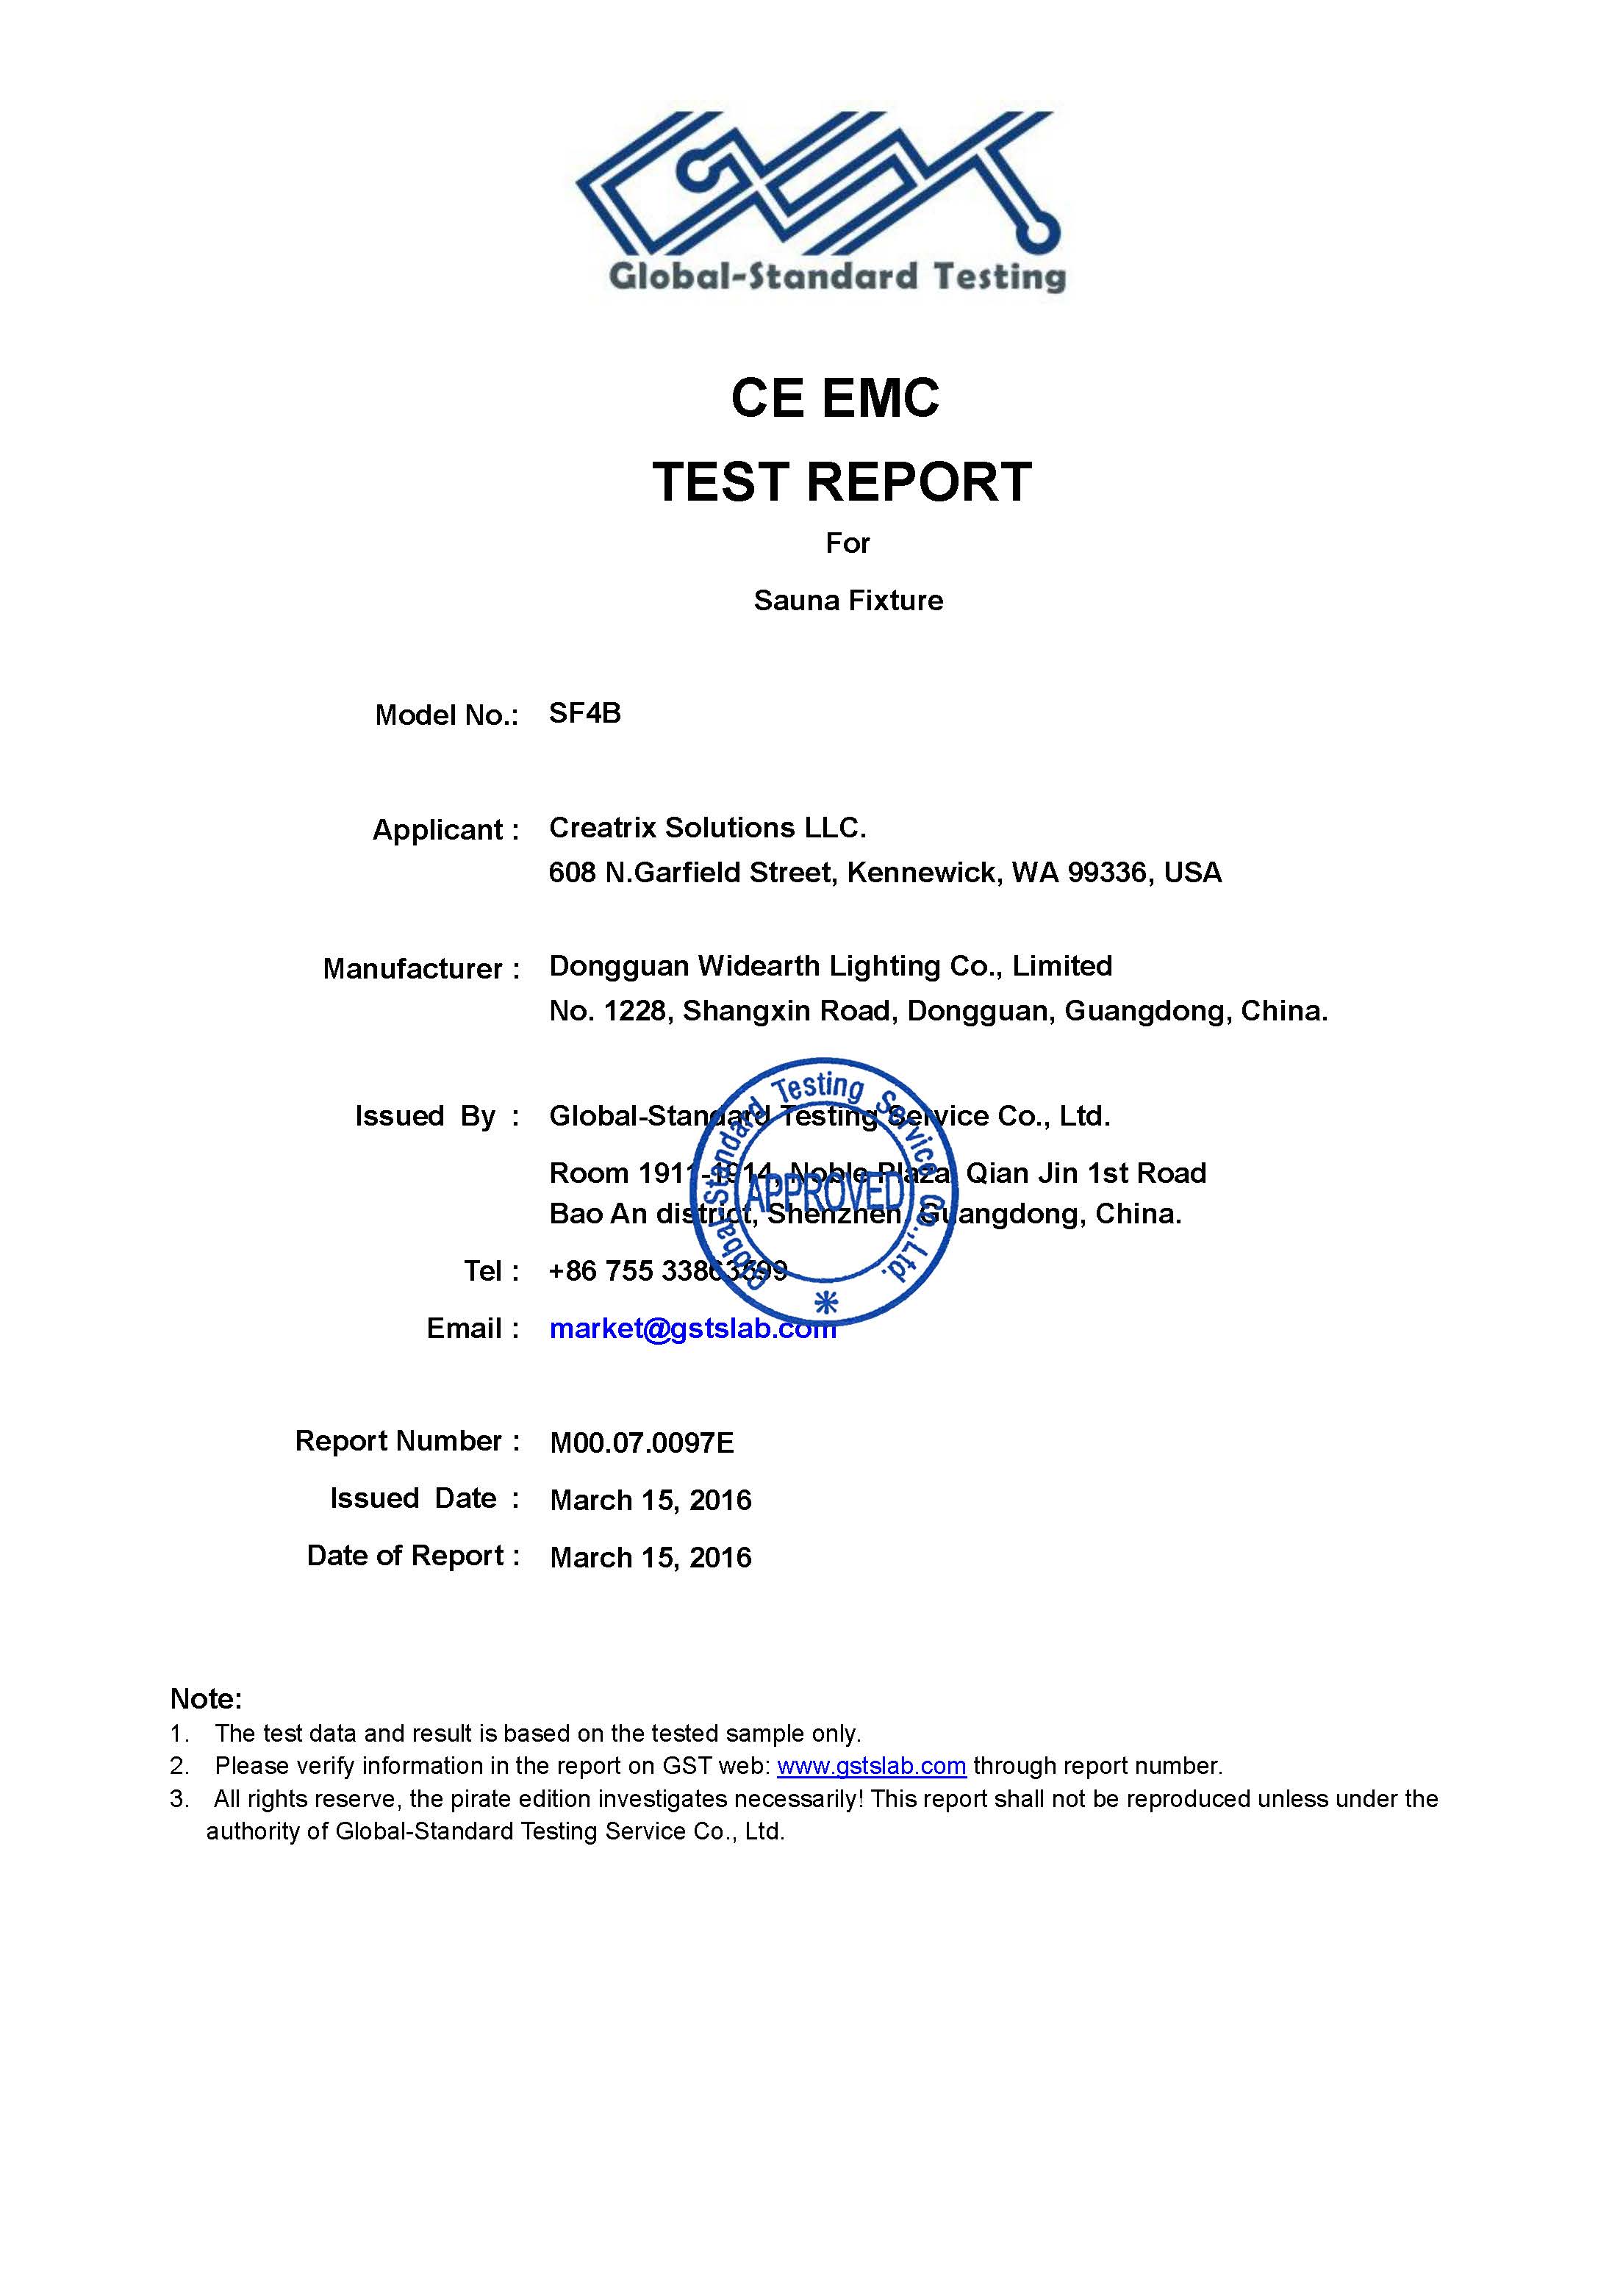 Sauna Fix EU CE EMC Test Report Page 1